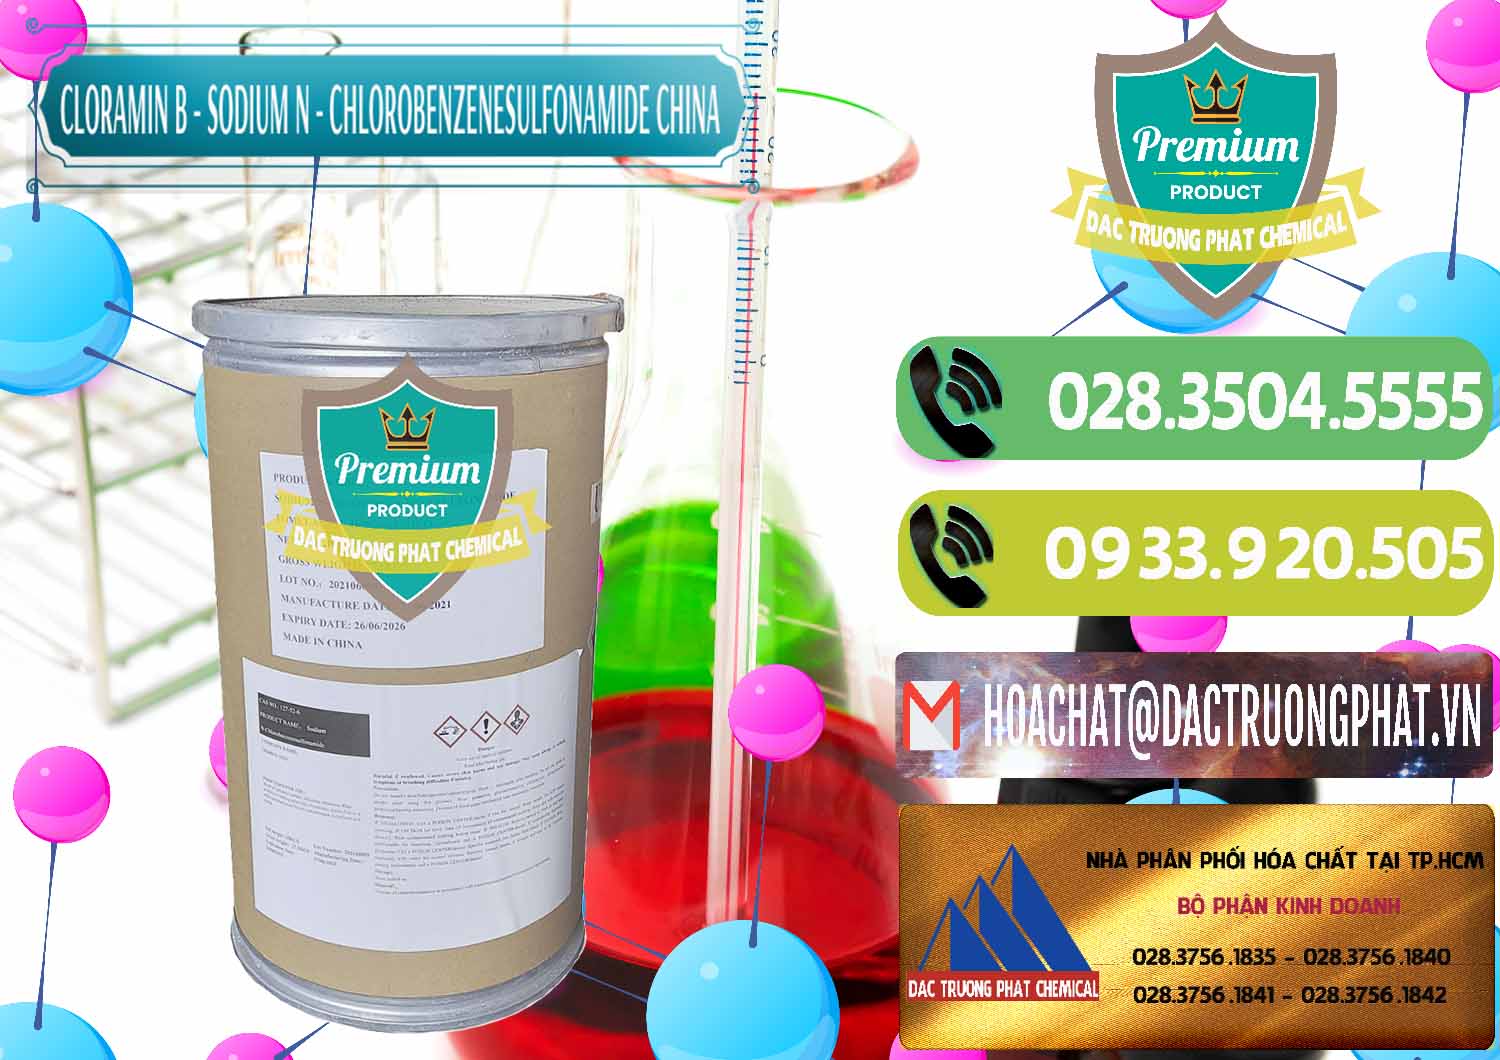 Cty bán _ cung ứng Cloramin B Khử Trùng, Diệt Khuẩn Trung Quốc China - 0298 - Nơi chuyên cung ứng - phân phối hóa chất tại TP.HCM - hoachatmientay.vn